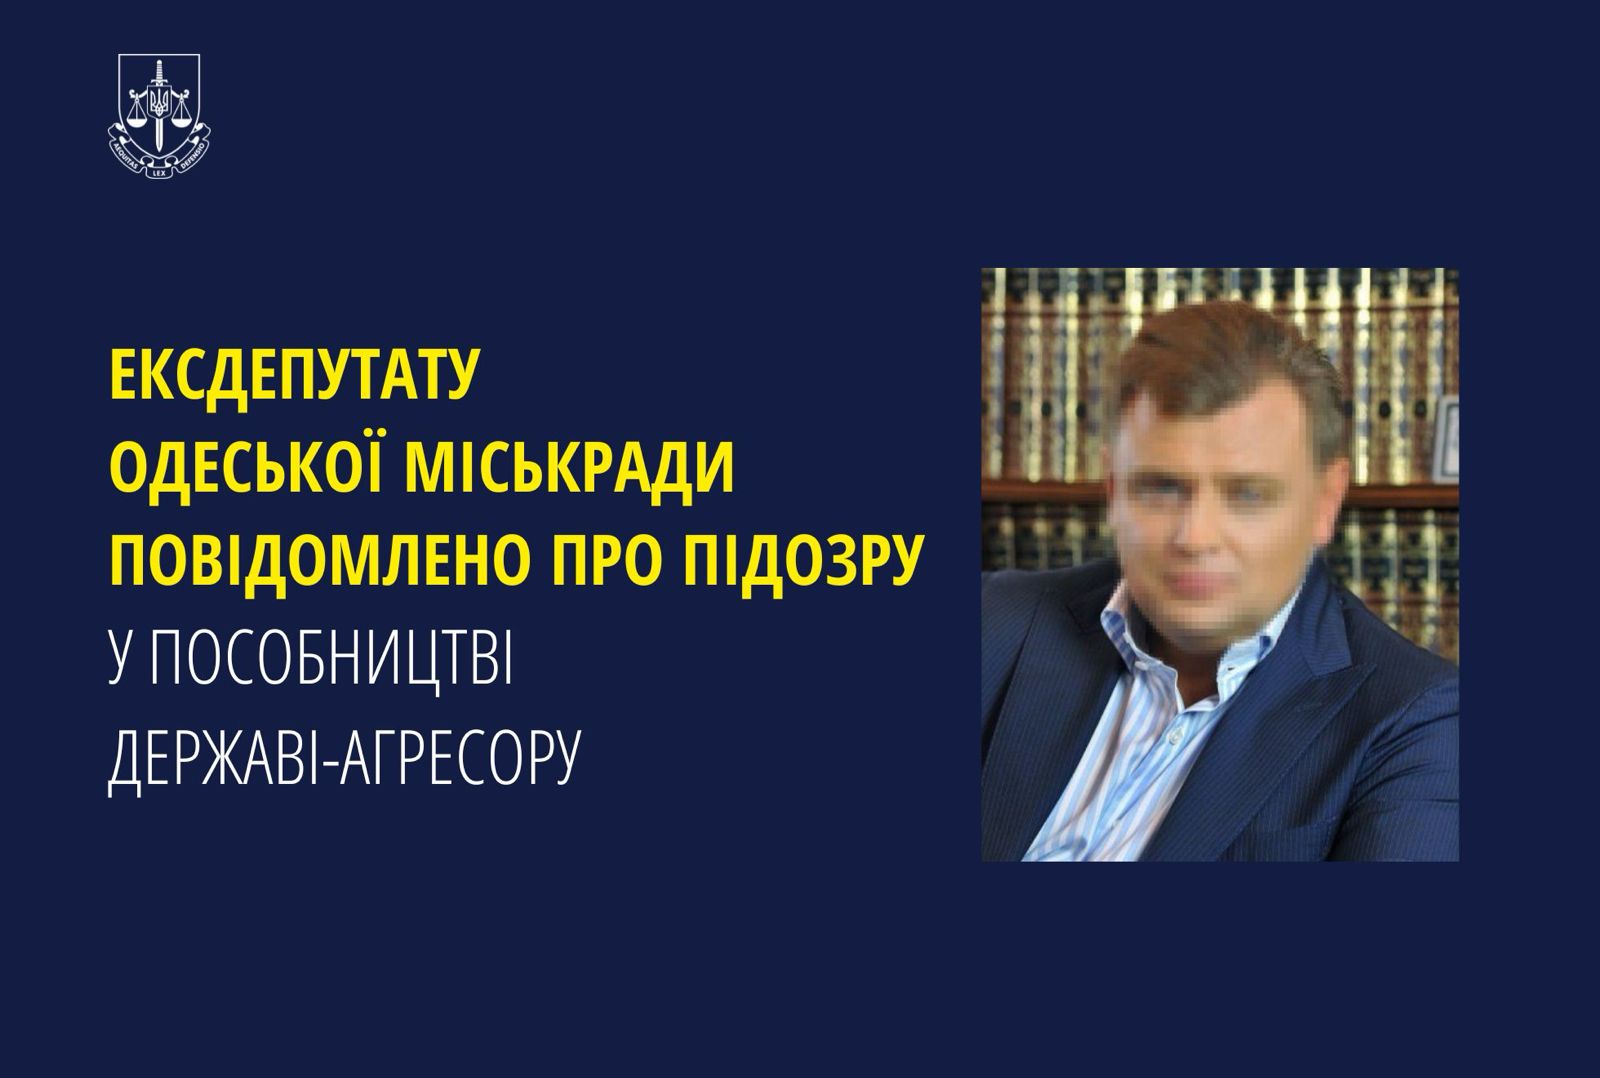 Довідомлено про підозру у пособництві державі-агресору ексдепутату Одеської міськради